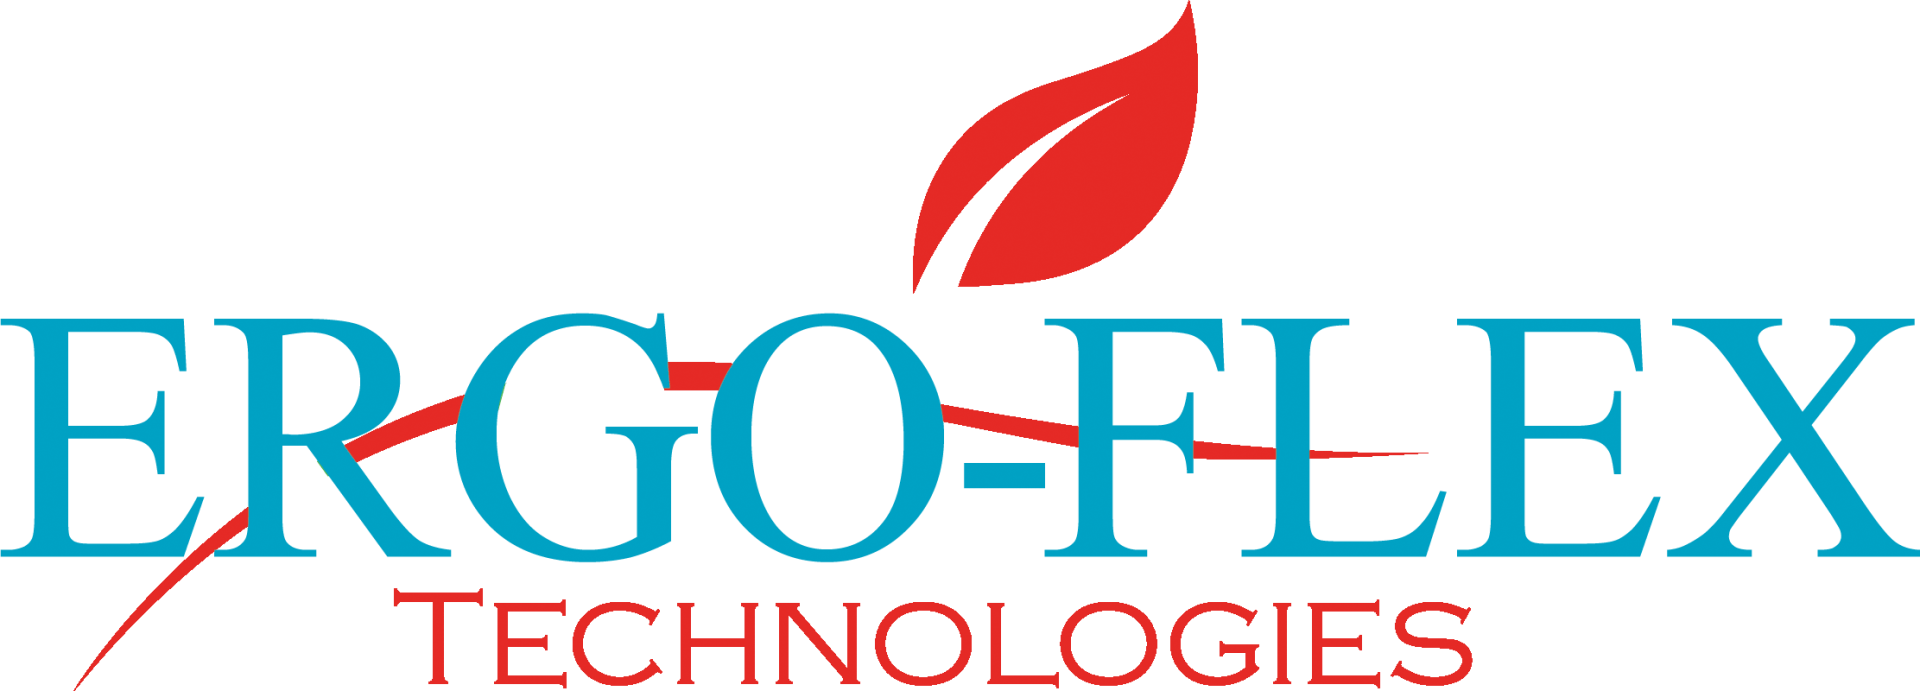 ergo flex technologies logo